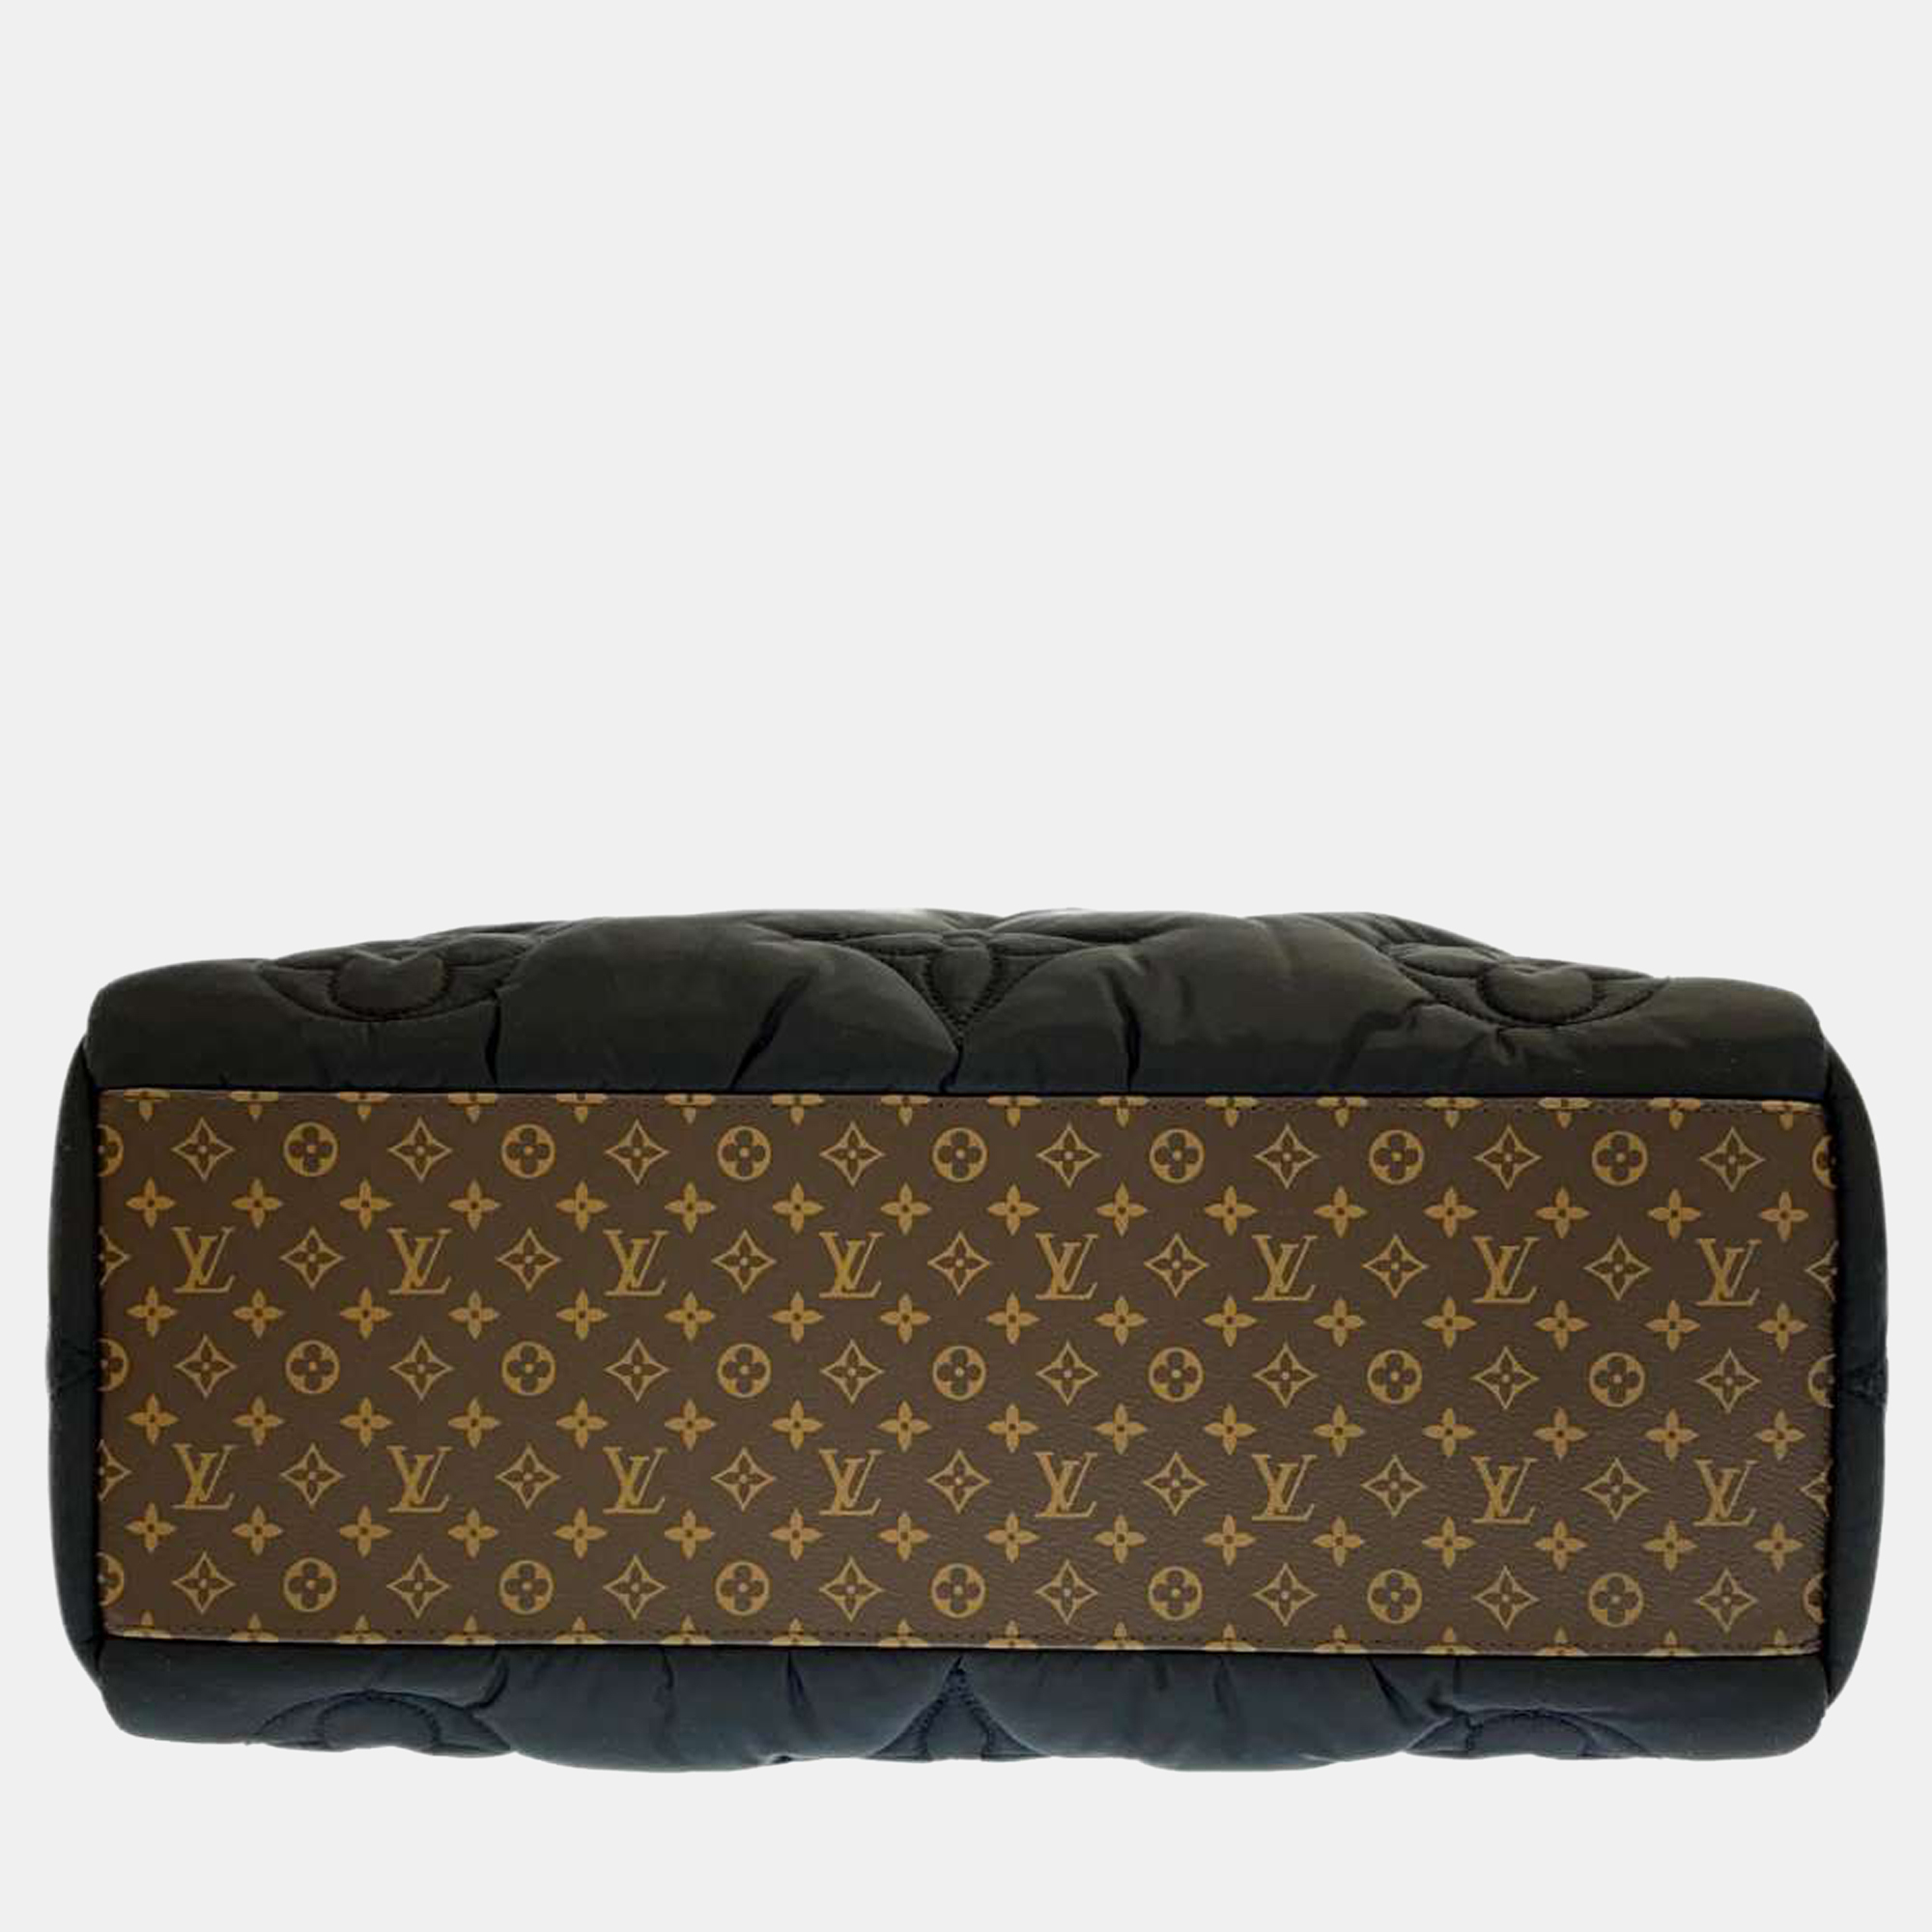 Authentic LOUIS VUITTON LV Pillow on the Go GM M59007 Bag #260-004